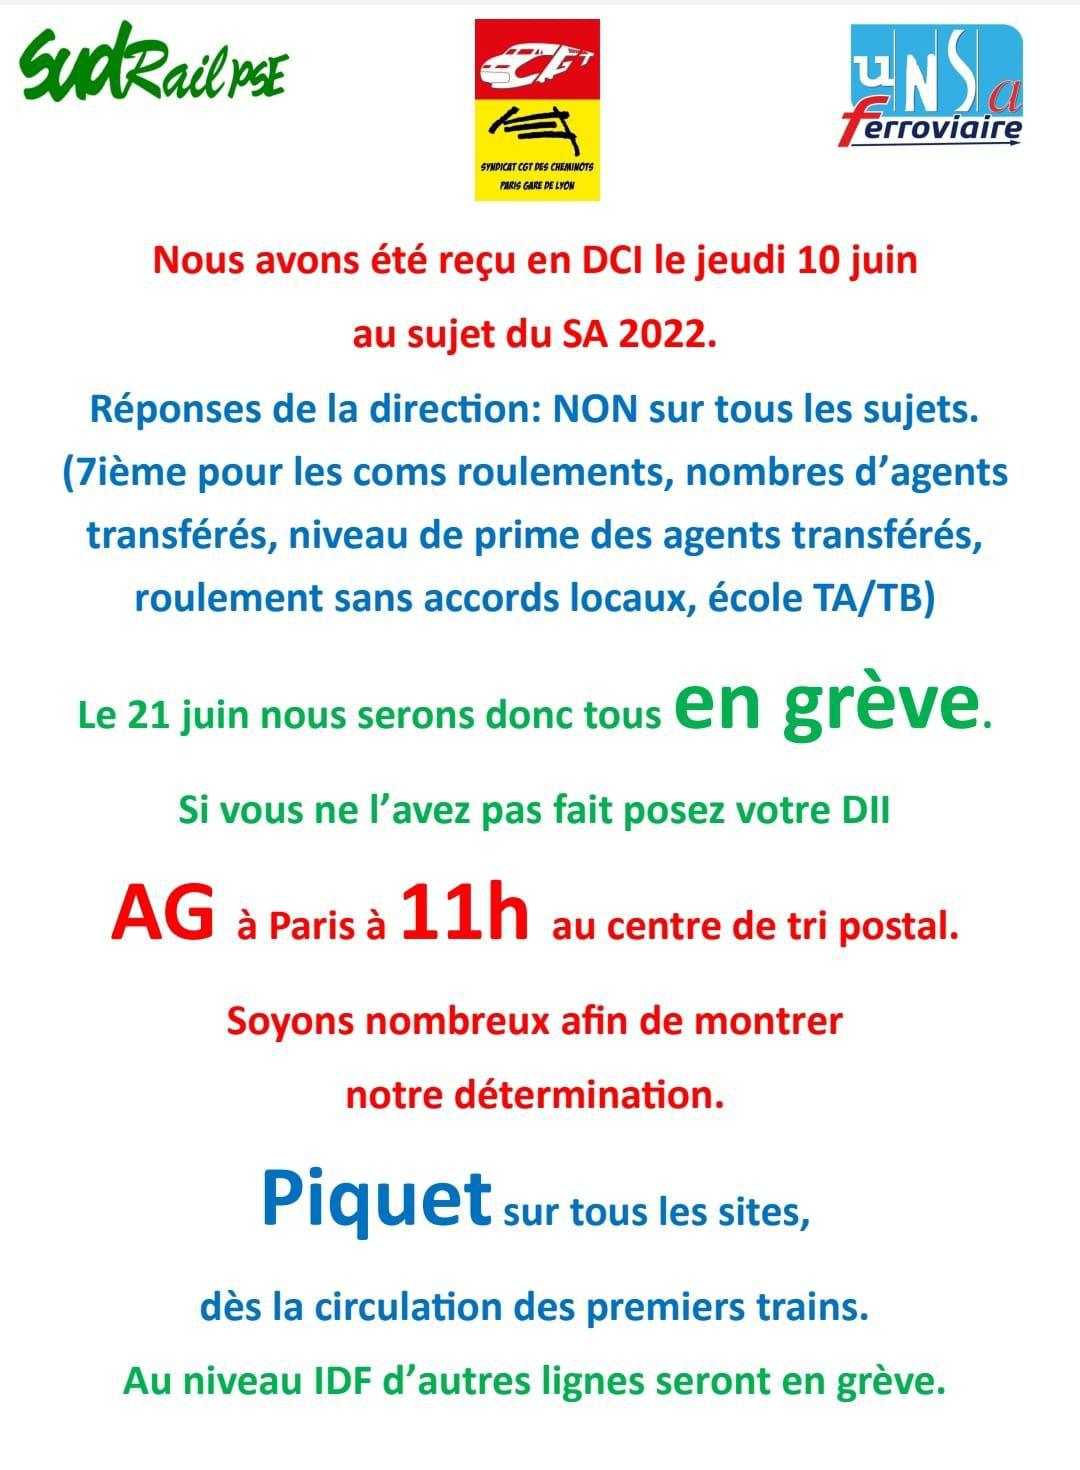 Les conducteurs de trains d'Île de France seront massivement en grève le Lundi 21 juin